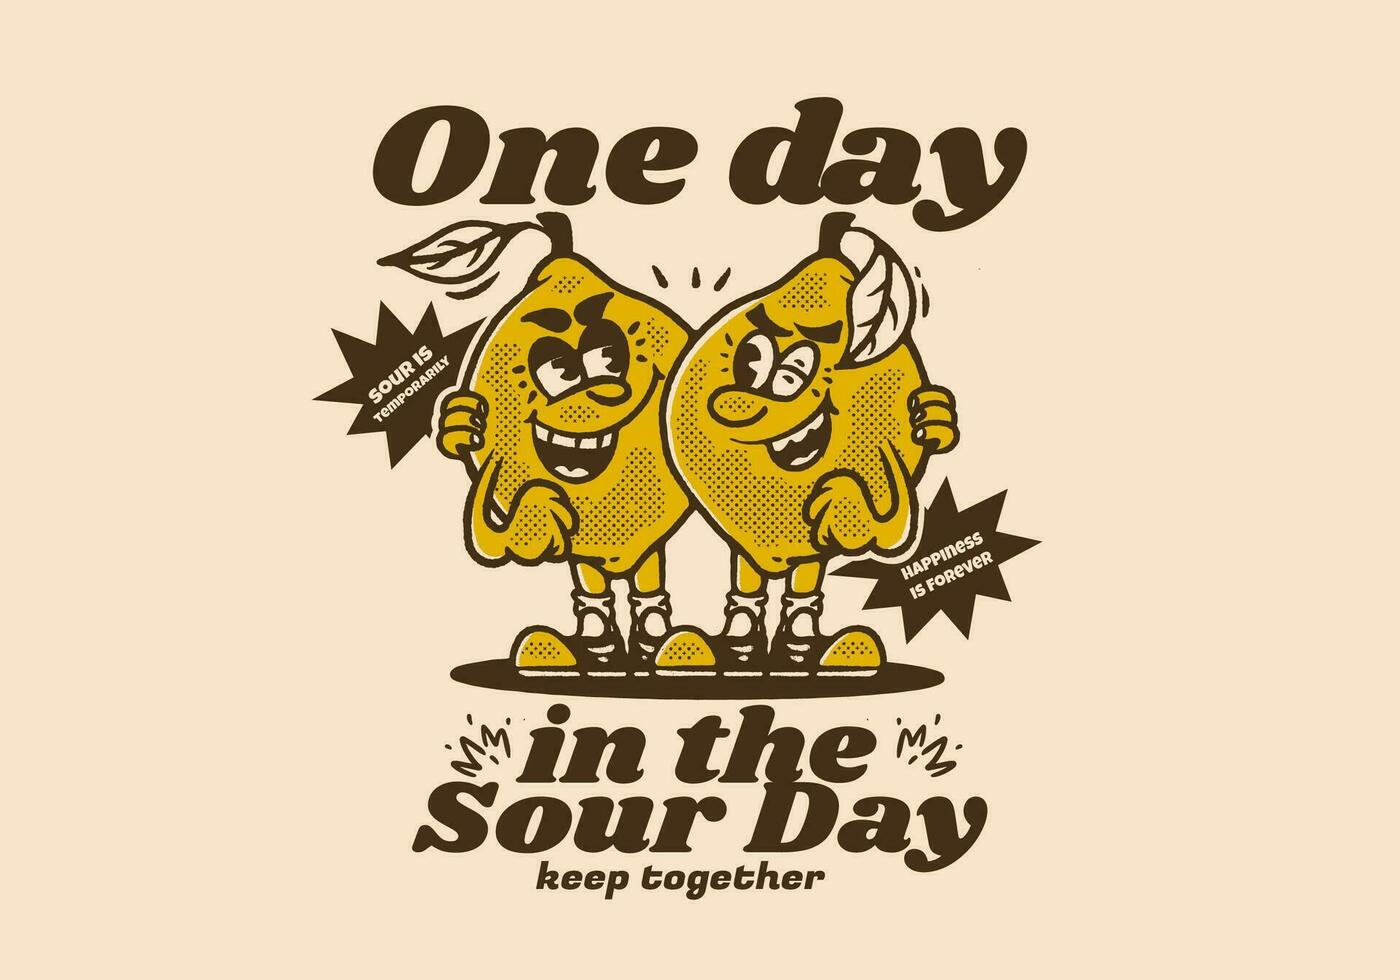 un journée dans le acide jour, deux citrons mascotte personnage illustration dans ancien style vecteur